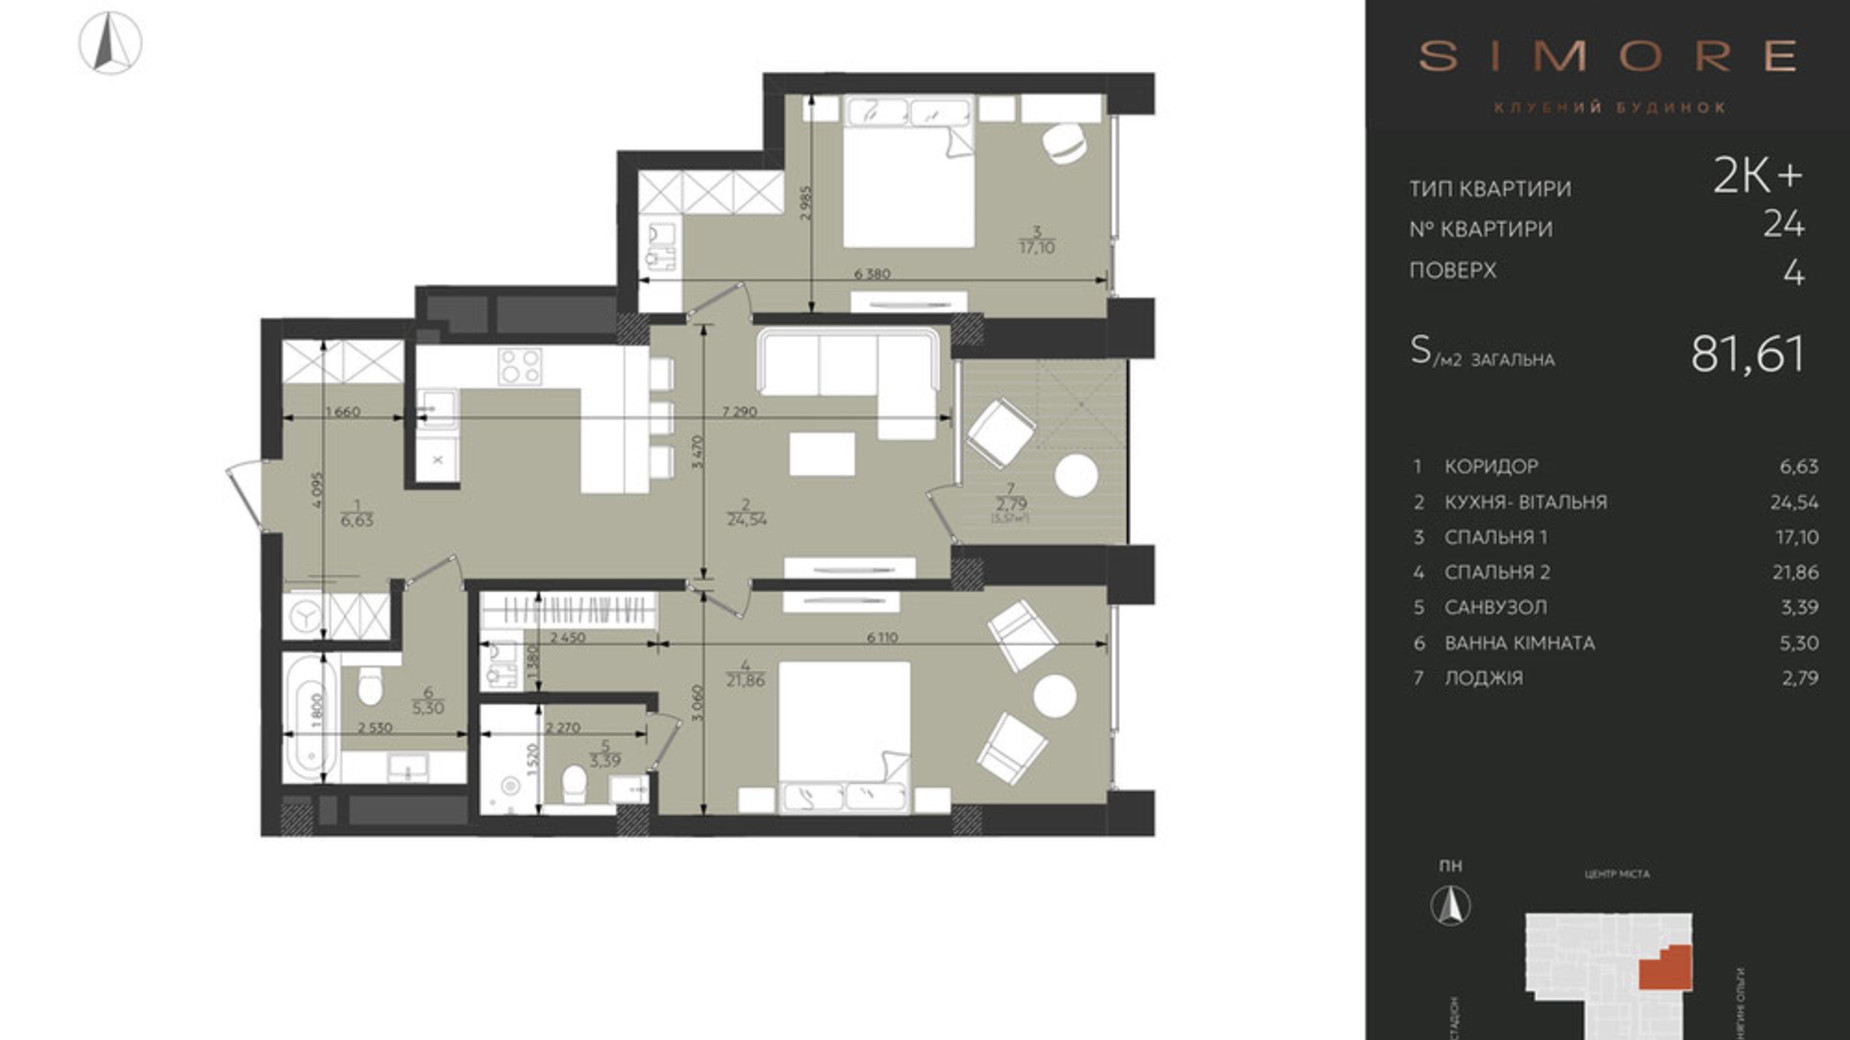 Планировка 2-комнатной квартиры в Клубный дом Simore 81.61 м², фото 694205